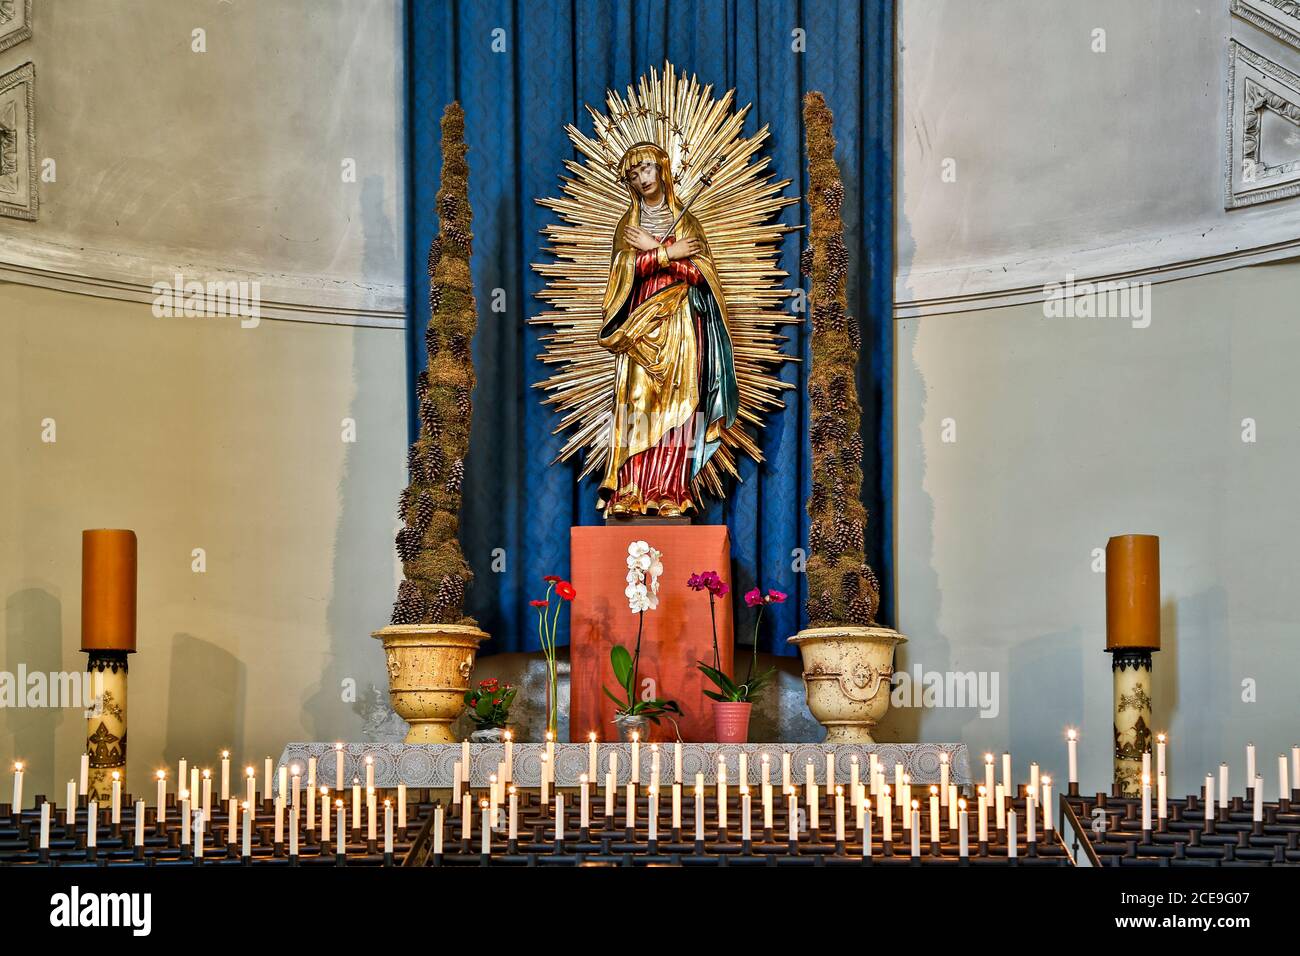 Statue de la Vierge des Sorrows et bougies, église Saint-Michel, Munich, Allemagne Banque D'Images